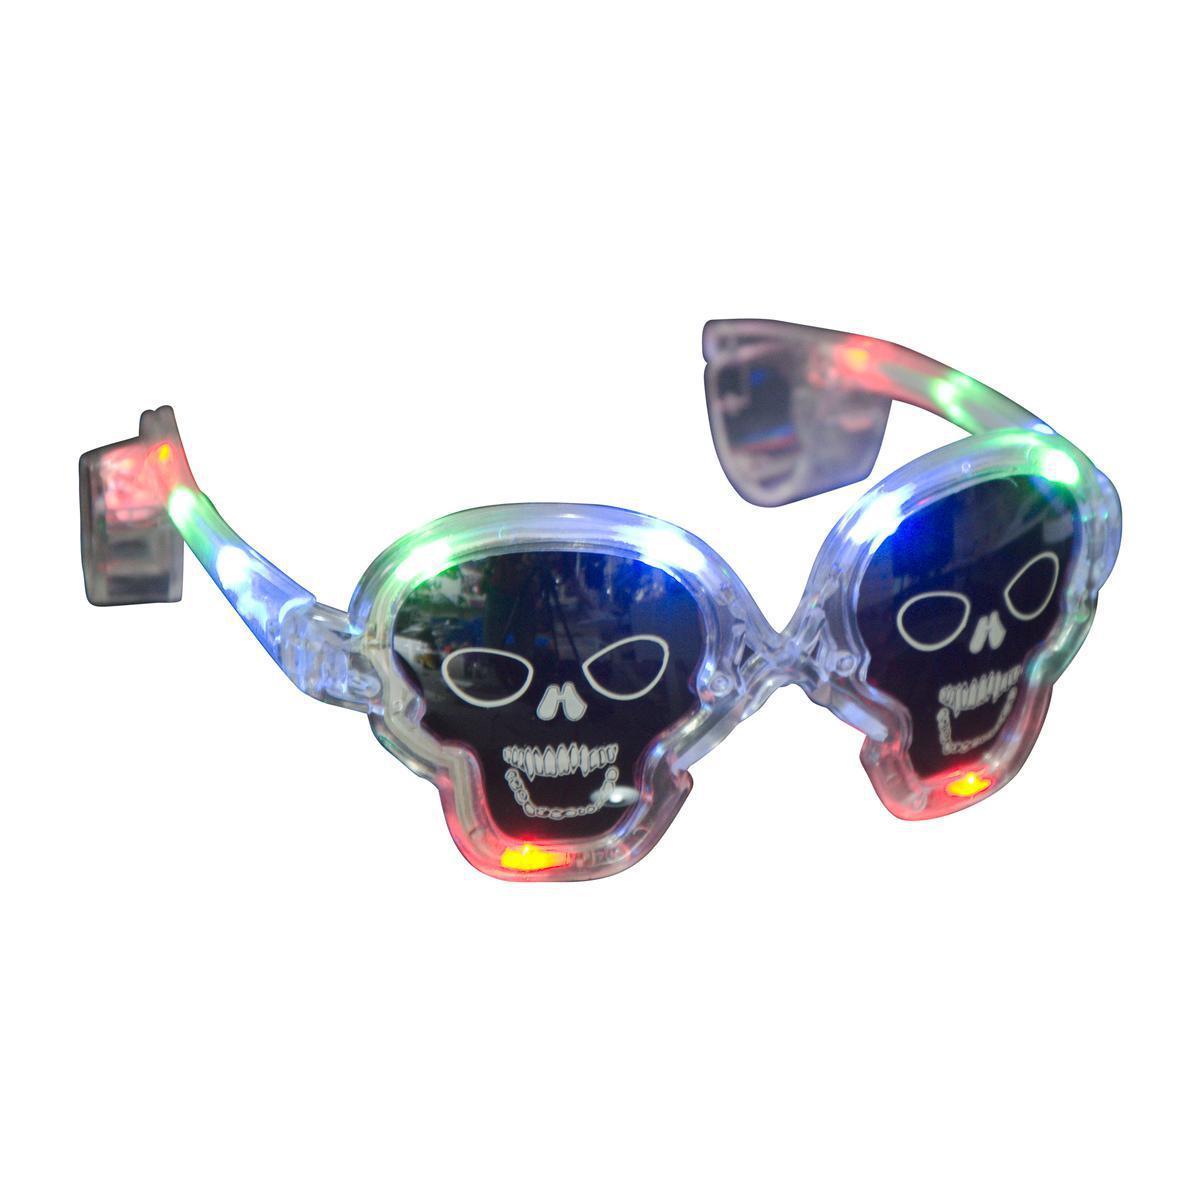 Lunettes Halloween tête de mort à LED en plastique - 15,2 x 14,4 x 8,5 cm - Différents coloris